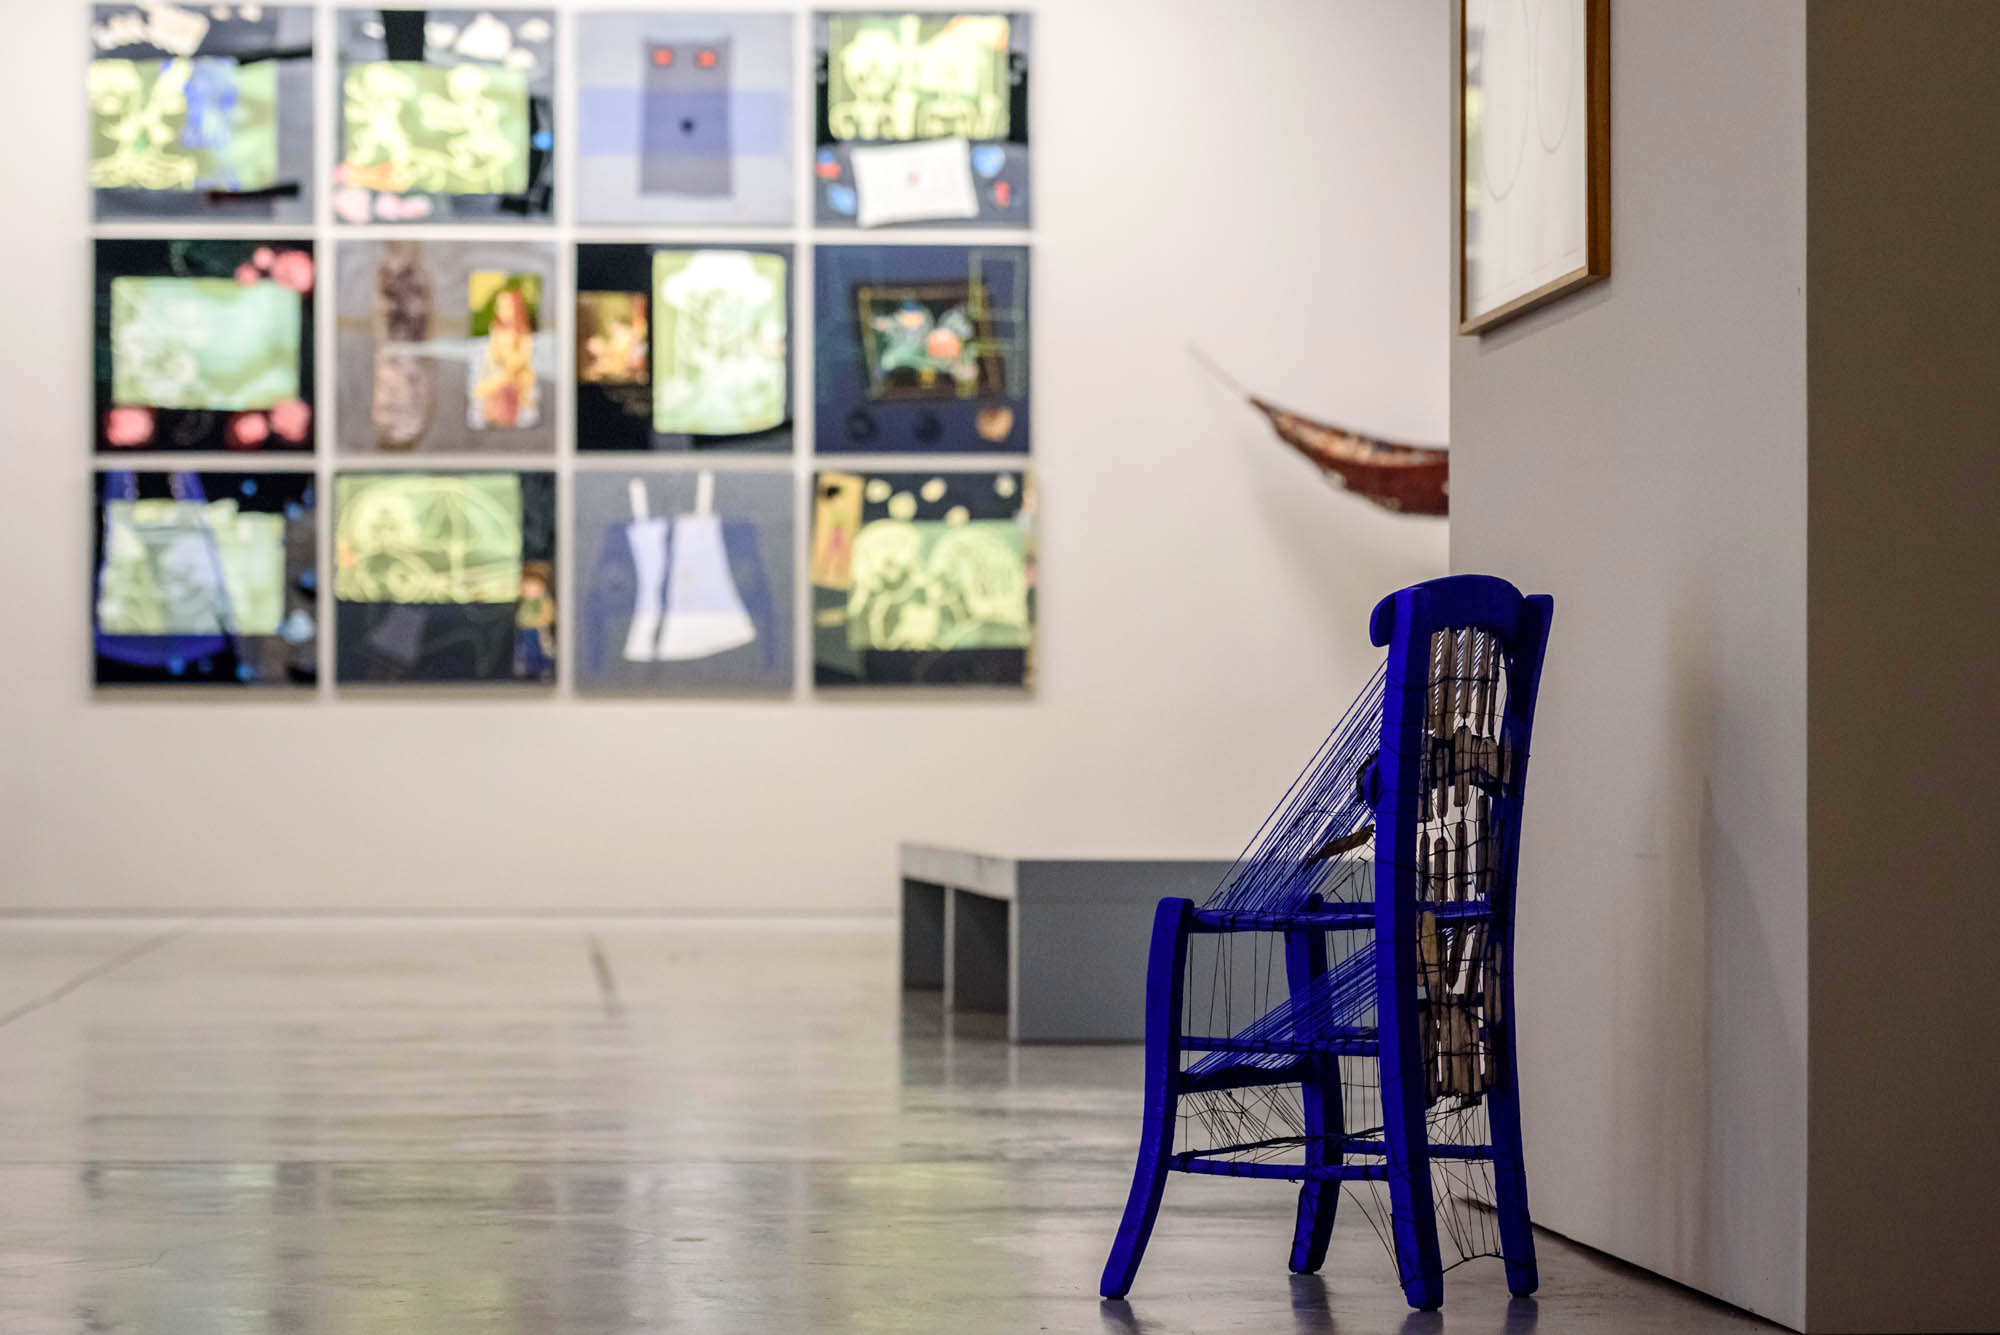 Ναύπλιο: 73 γυναίκες εικαστικοί εκθέτουν 182 έργα με το “Now Women” στο Fougaro Artcenter